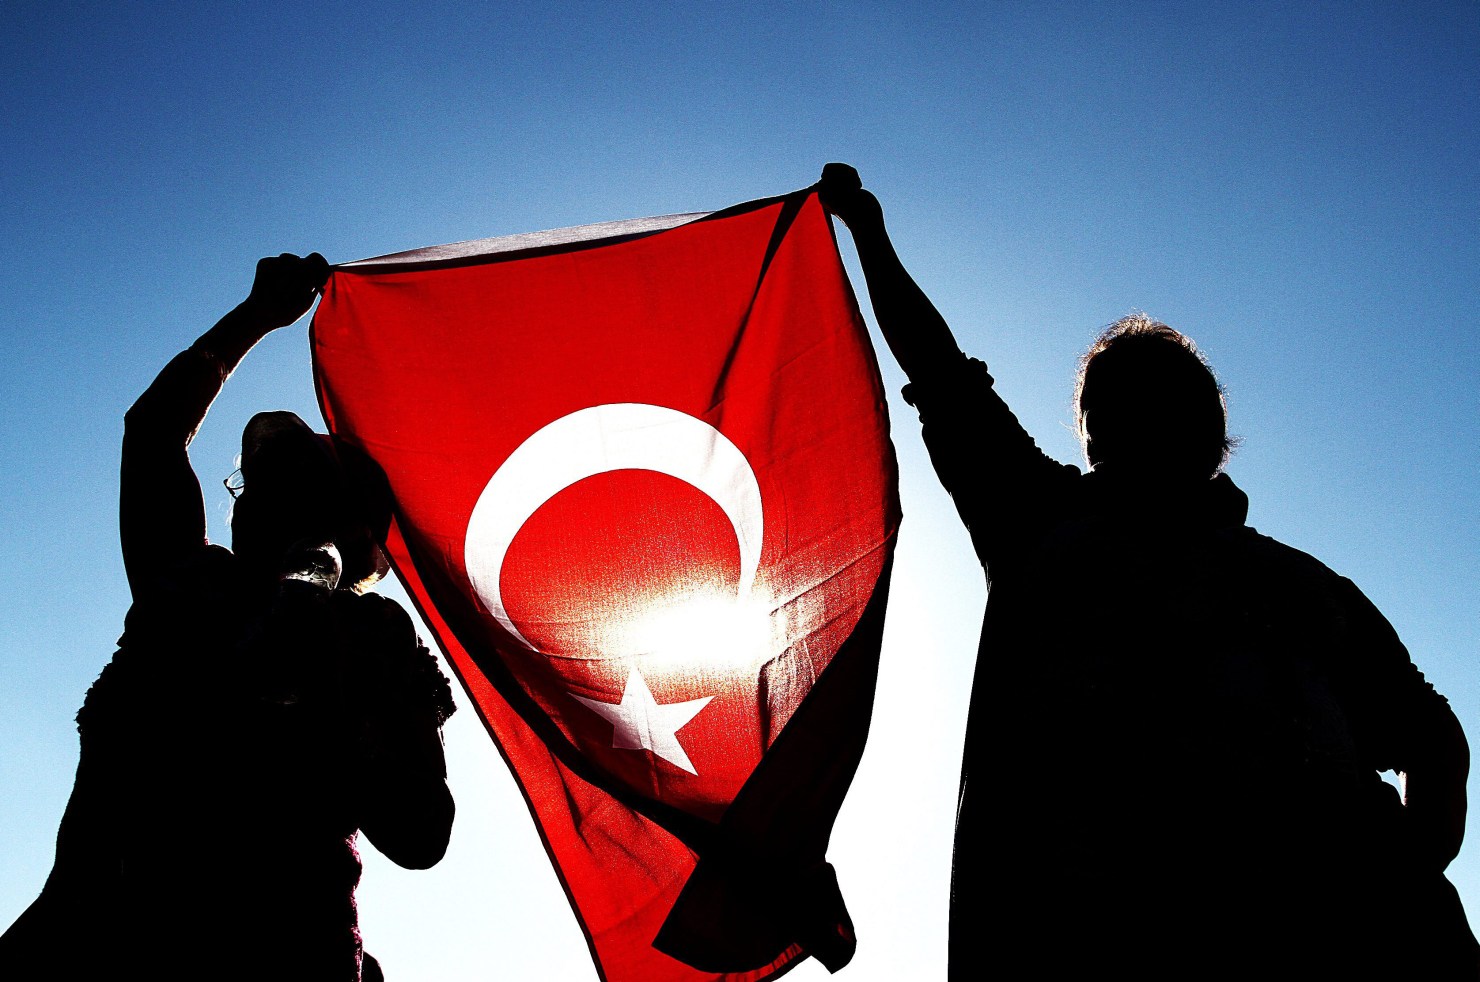 صور علم تركيا , رمزيات للعلم التركي - حبيبي